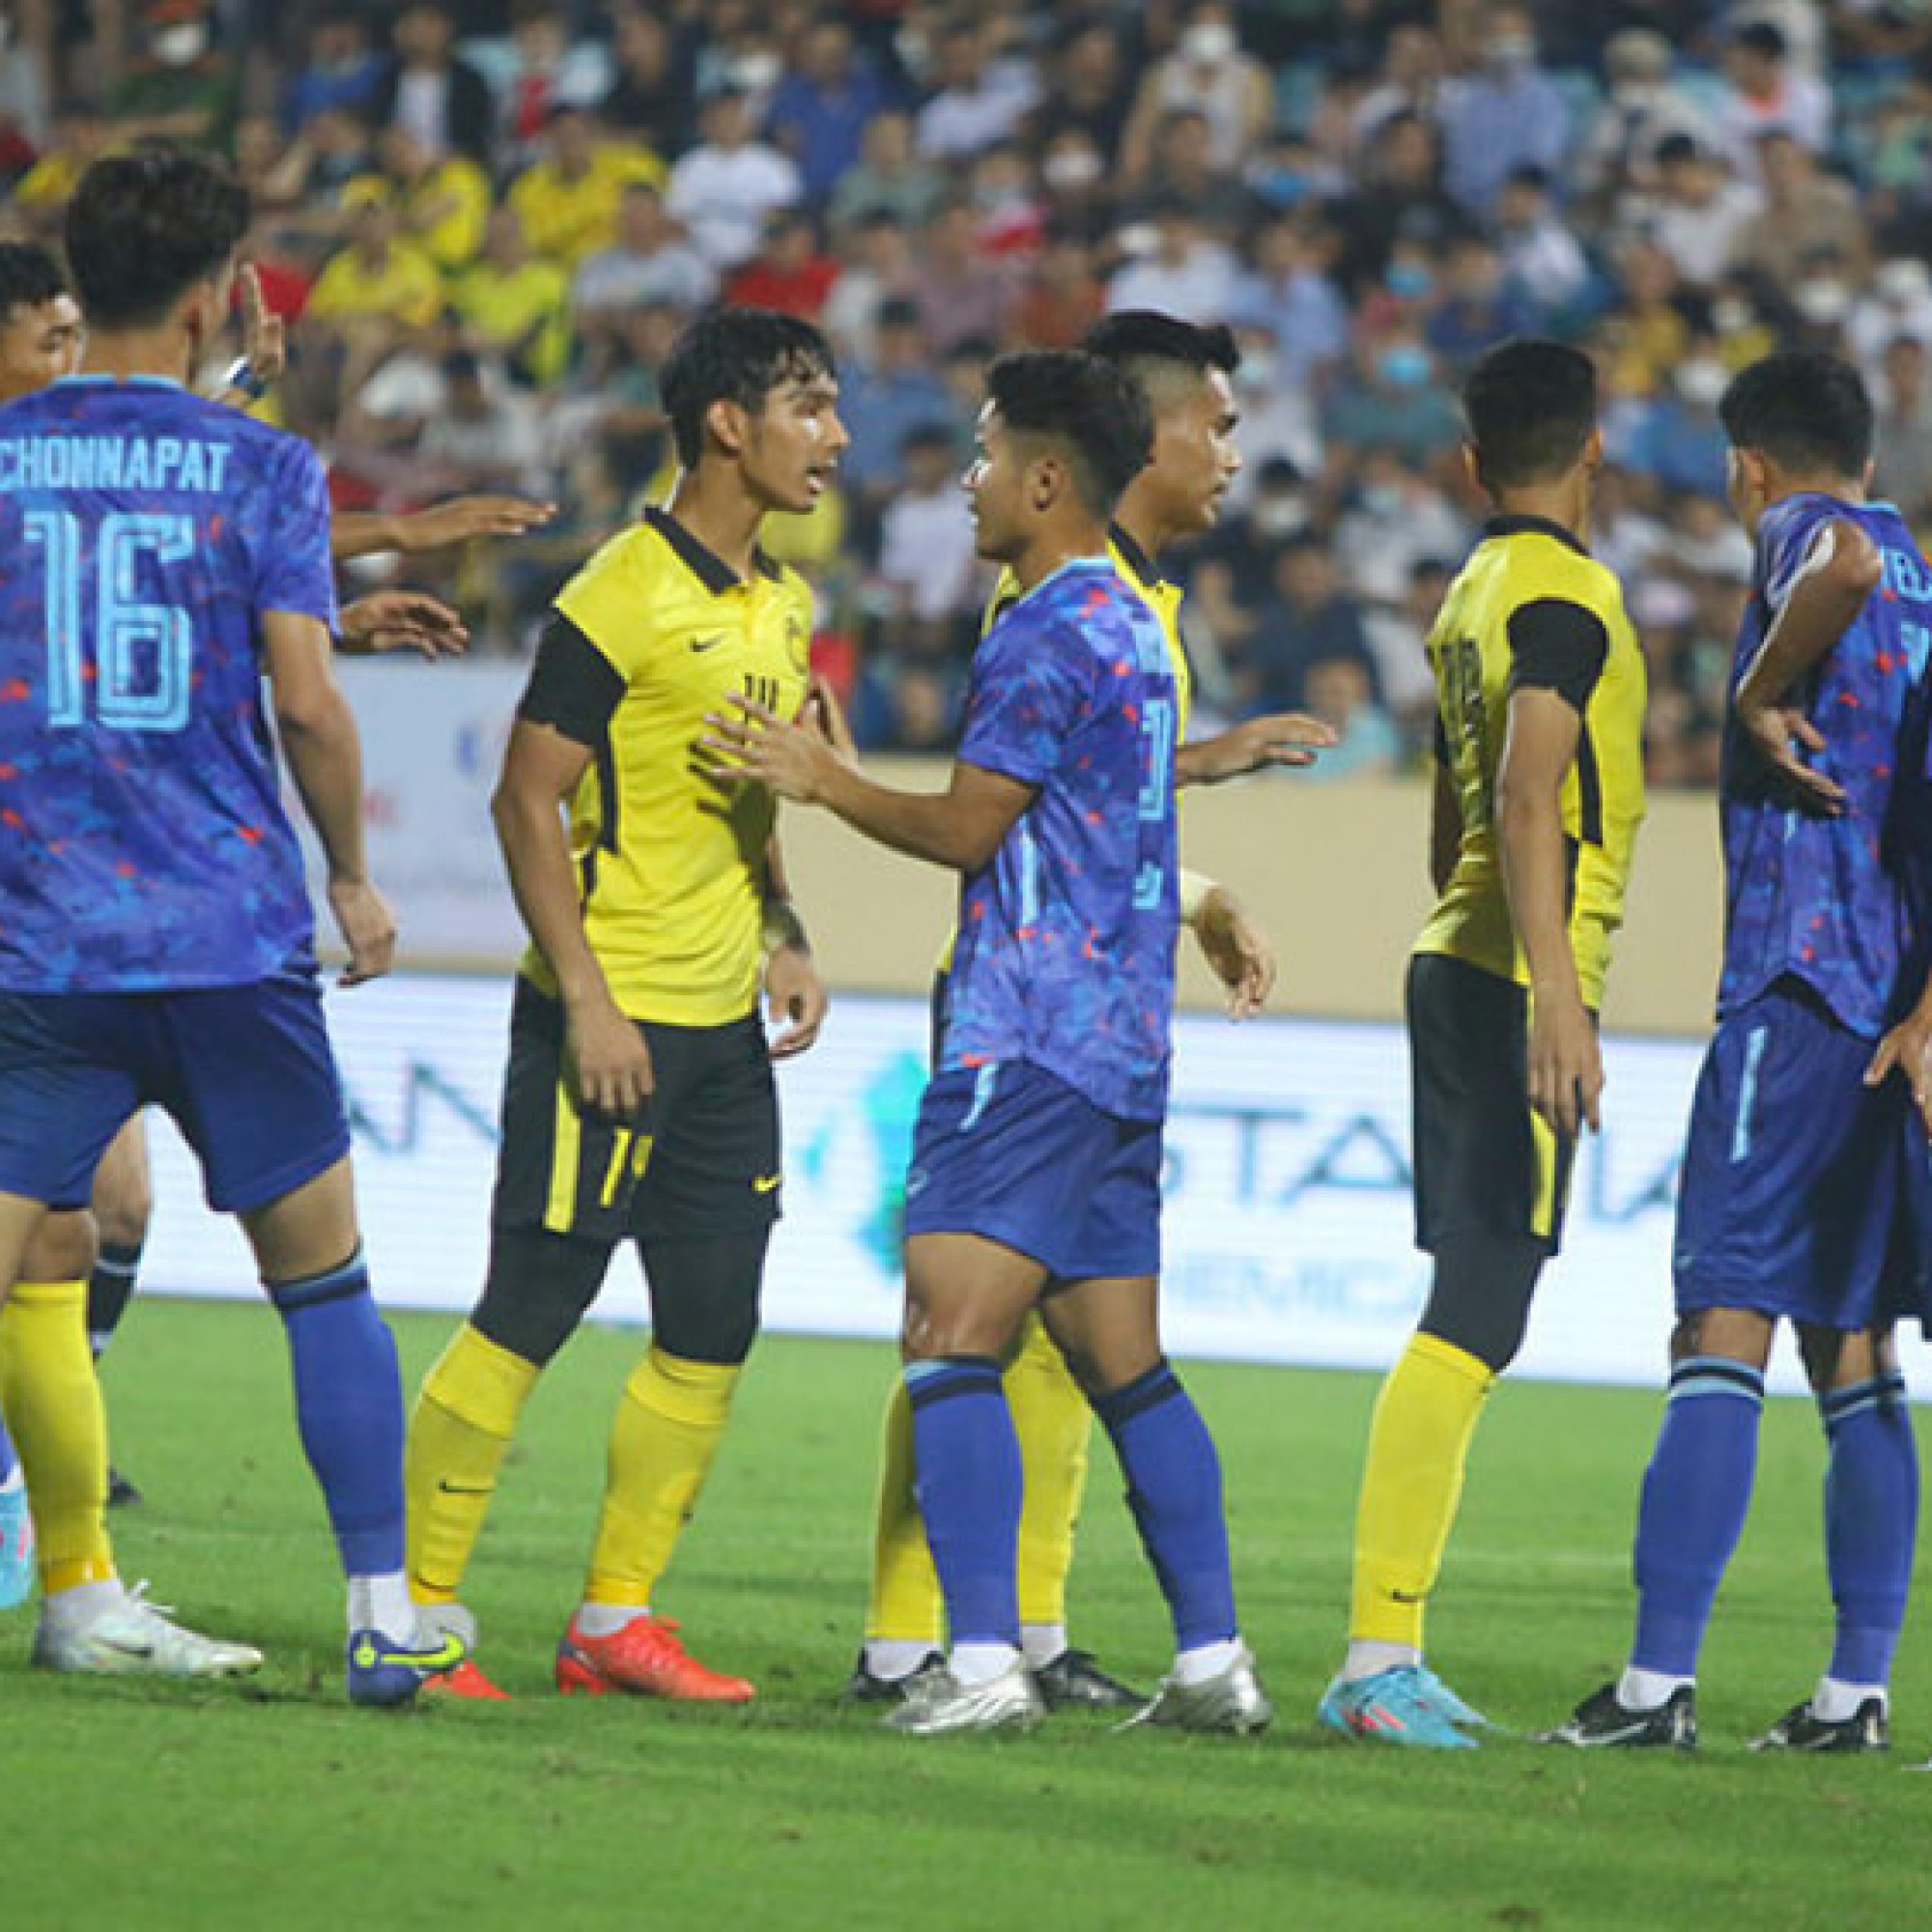 Thể thao - Sao U23 Thái Lan và Malaysia suýt choảng nhau, va chạm nảy lửa như đấu võ